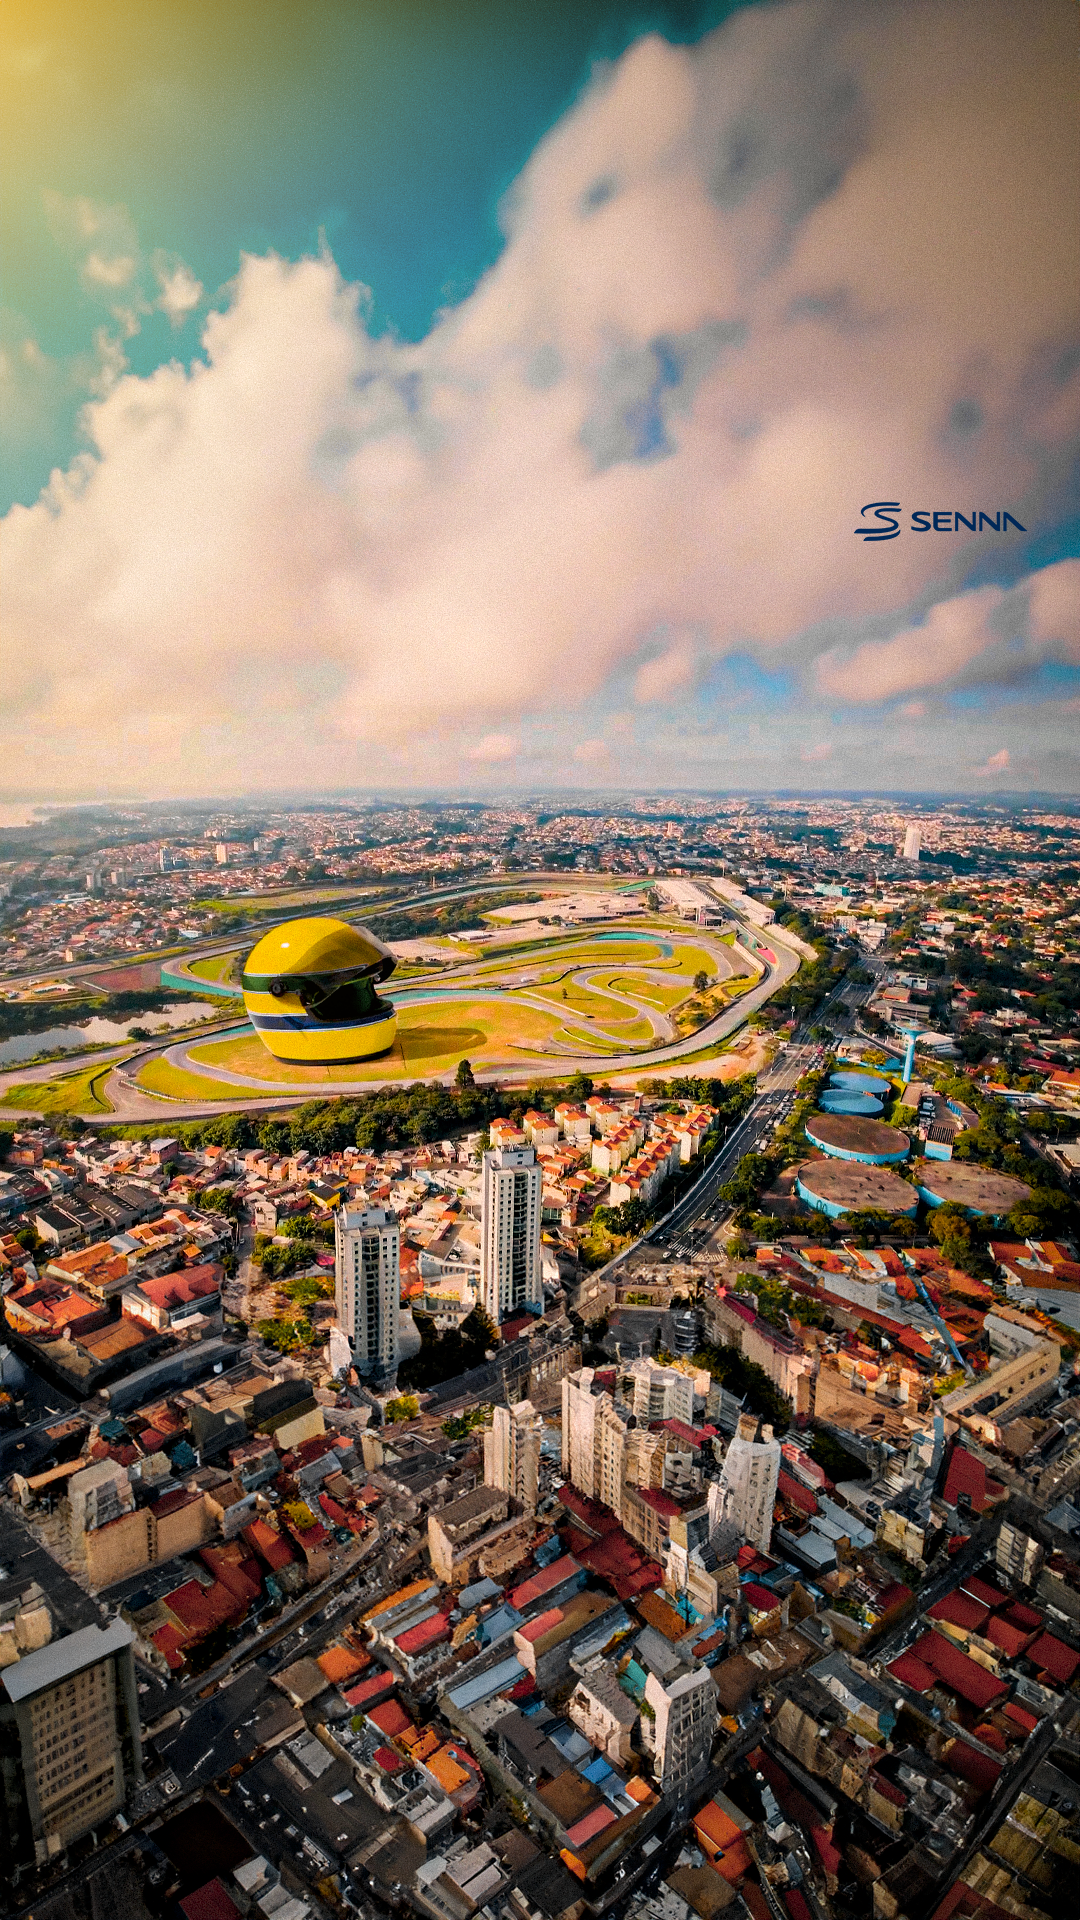 Capacete gigante em Interlagos é resultado de ação de FOOH